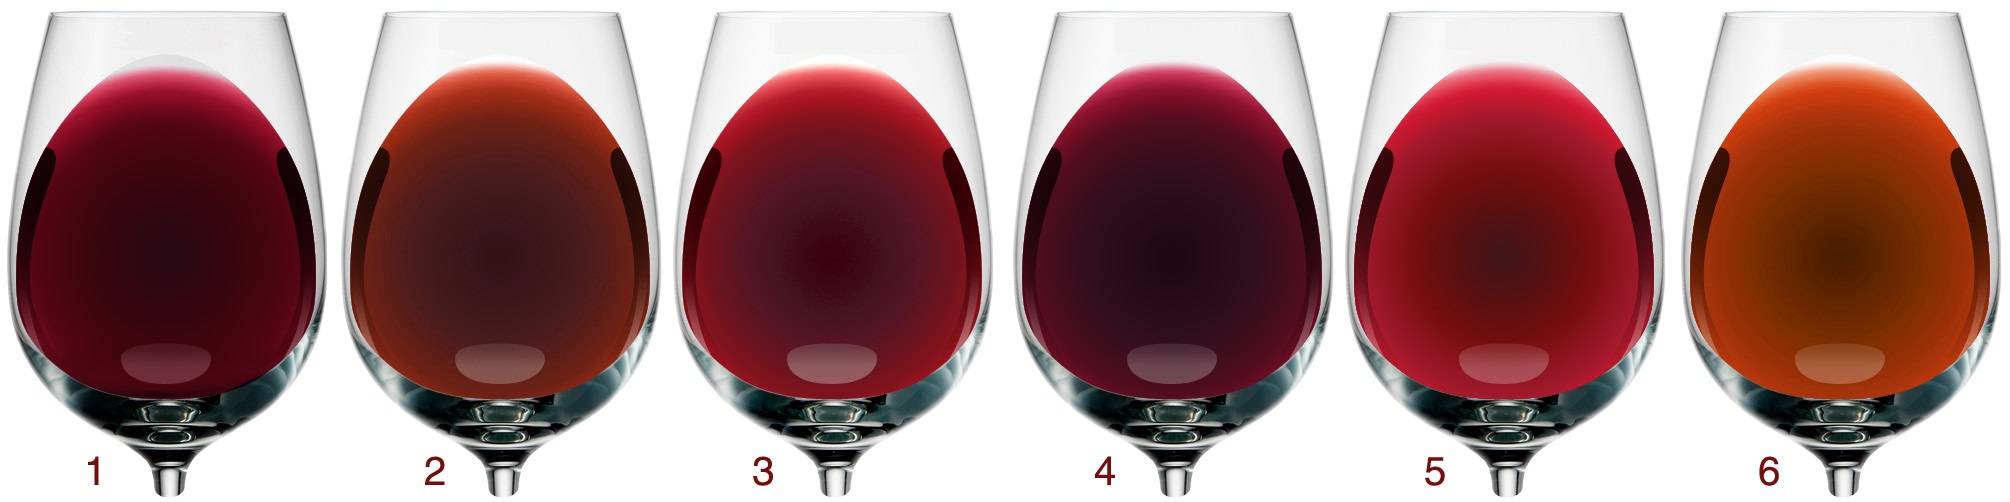 Учимся выбирать хорошее вино — 10 советов